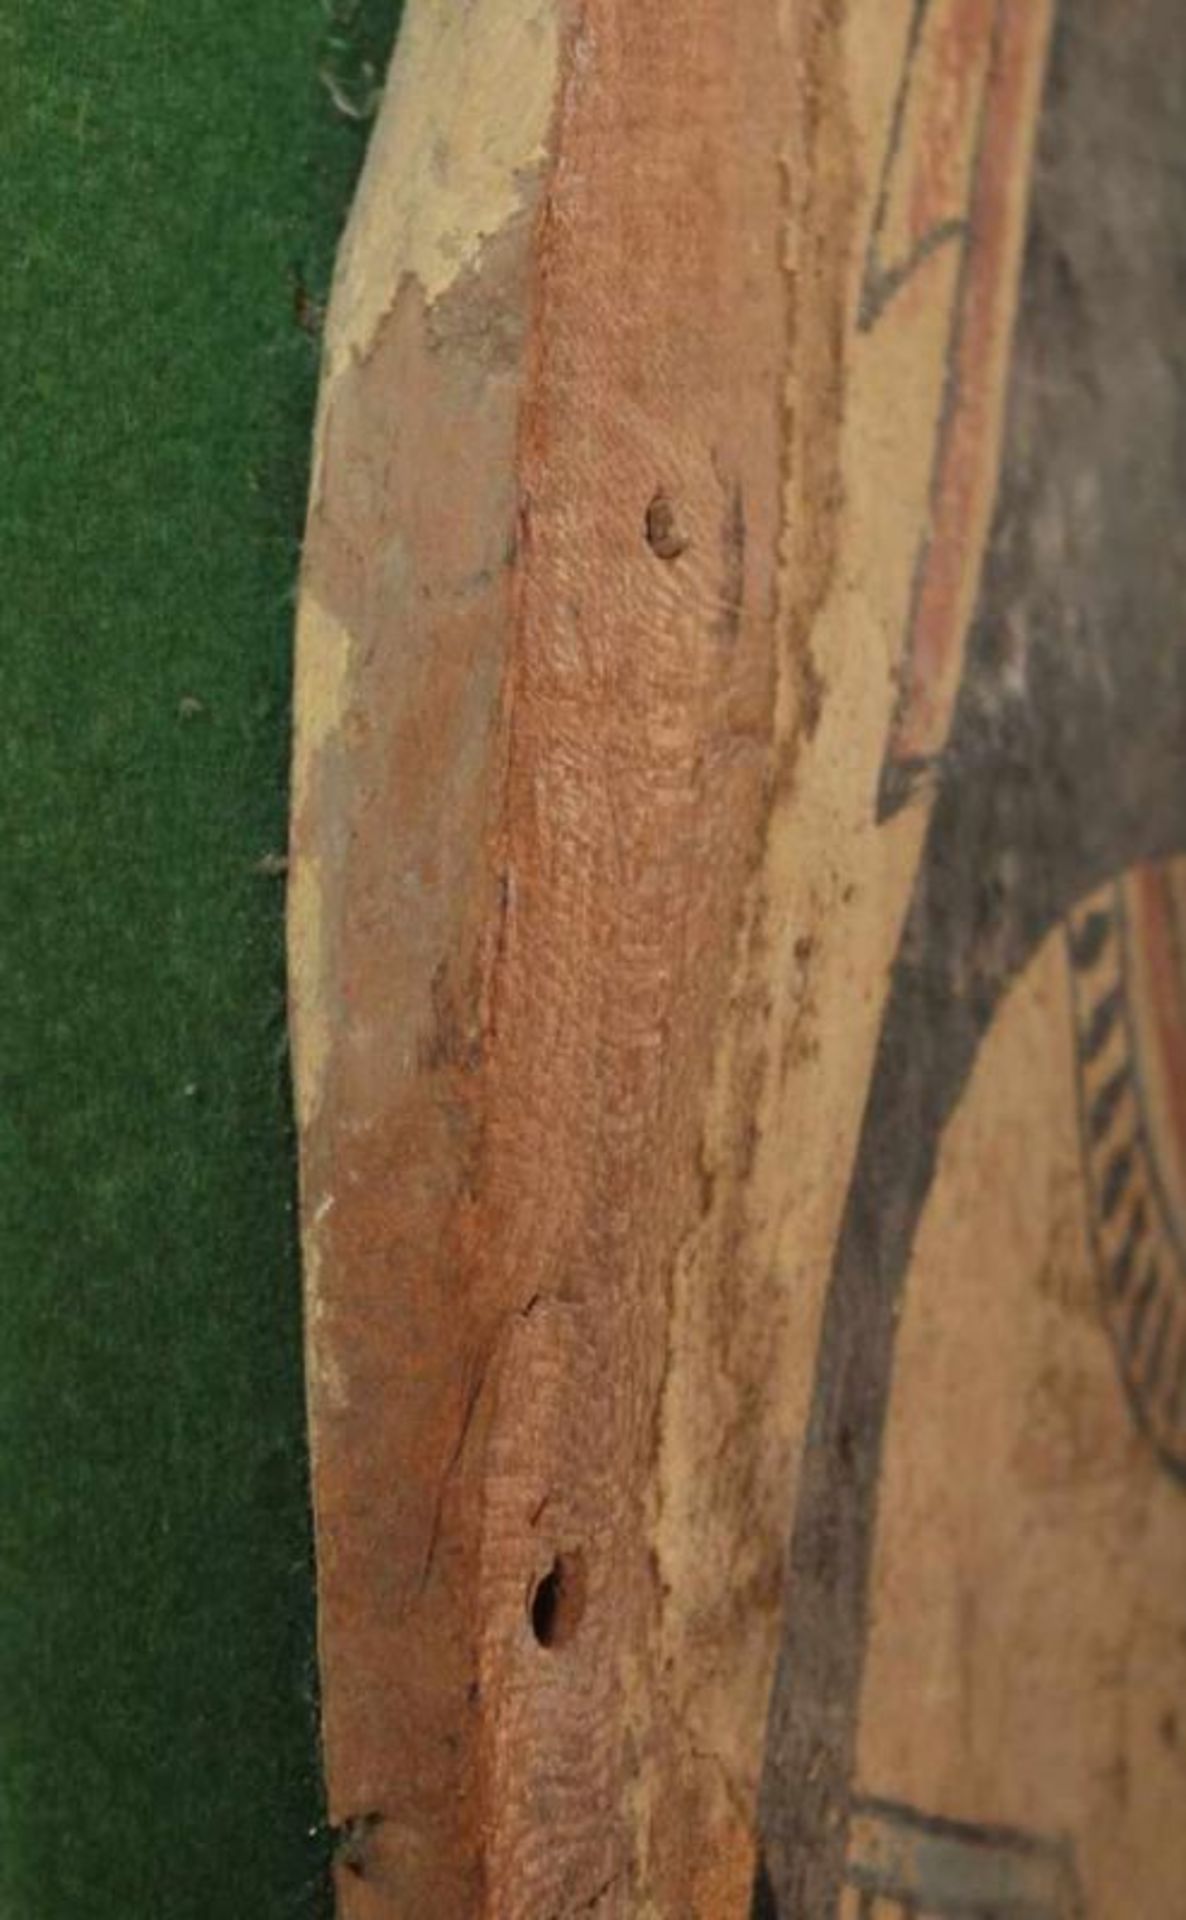 SARKOPHAGDECKEL, Holz, bemalt, H 193, B 44, wohl ÄGYPTEN, wohl neues Reich 13.-15.Jh. Rechnung von - Image 6 of 6